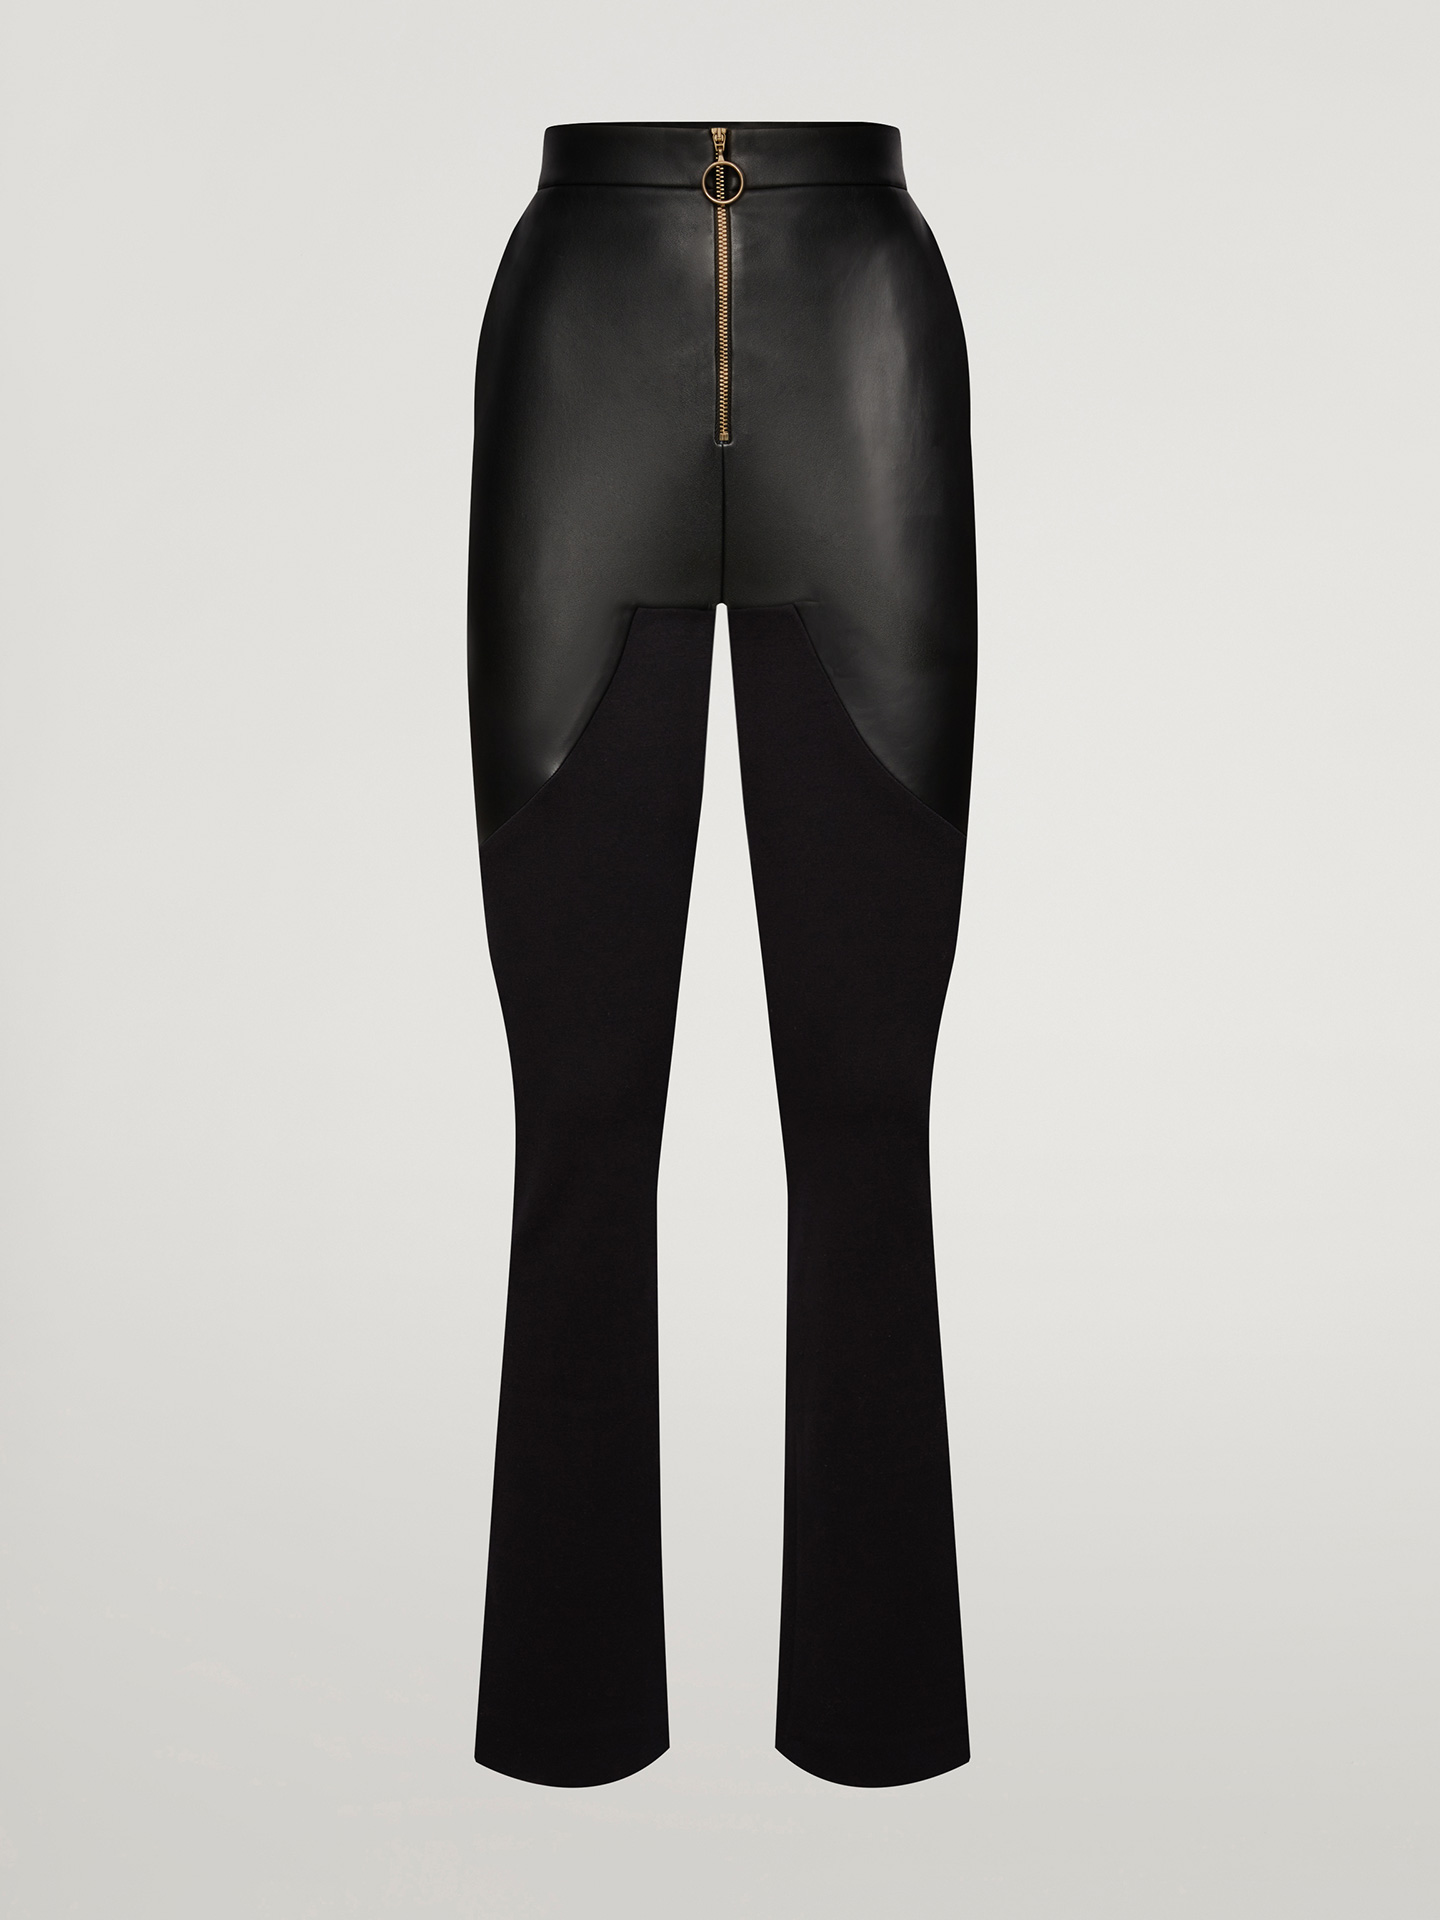 Wolford – Vegan Body Lines Trousers, Frau, black, Größe: 38